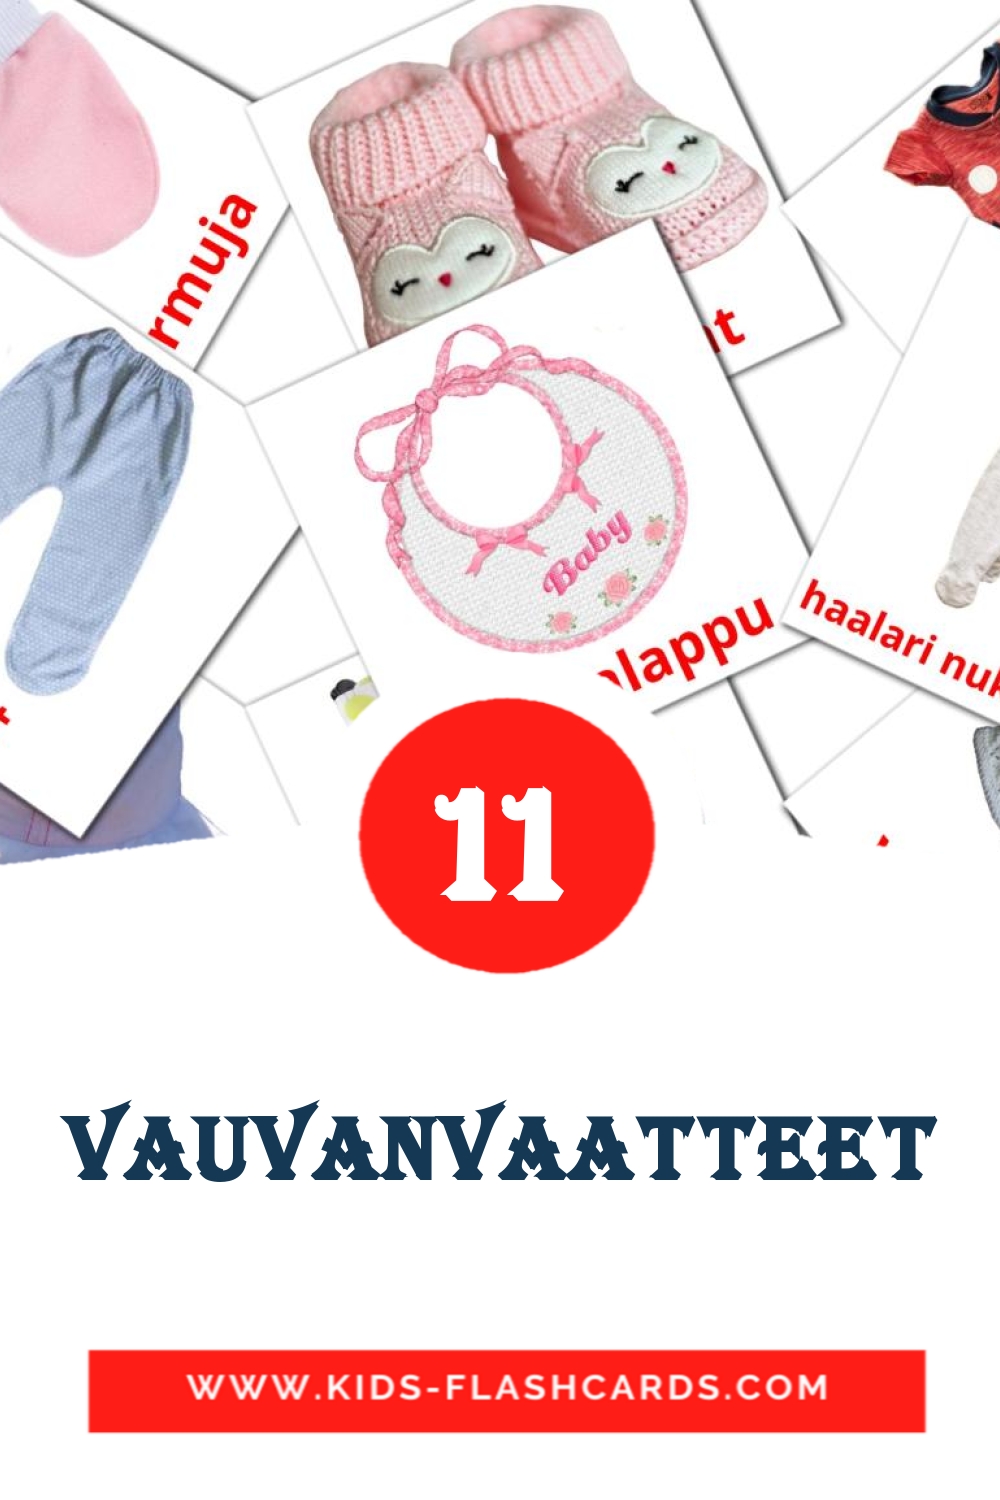 11 vauvanvaatteet Bildkarten für den Kindergarten auf Finnisch